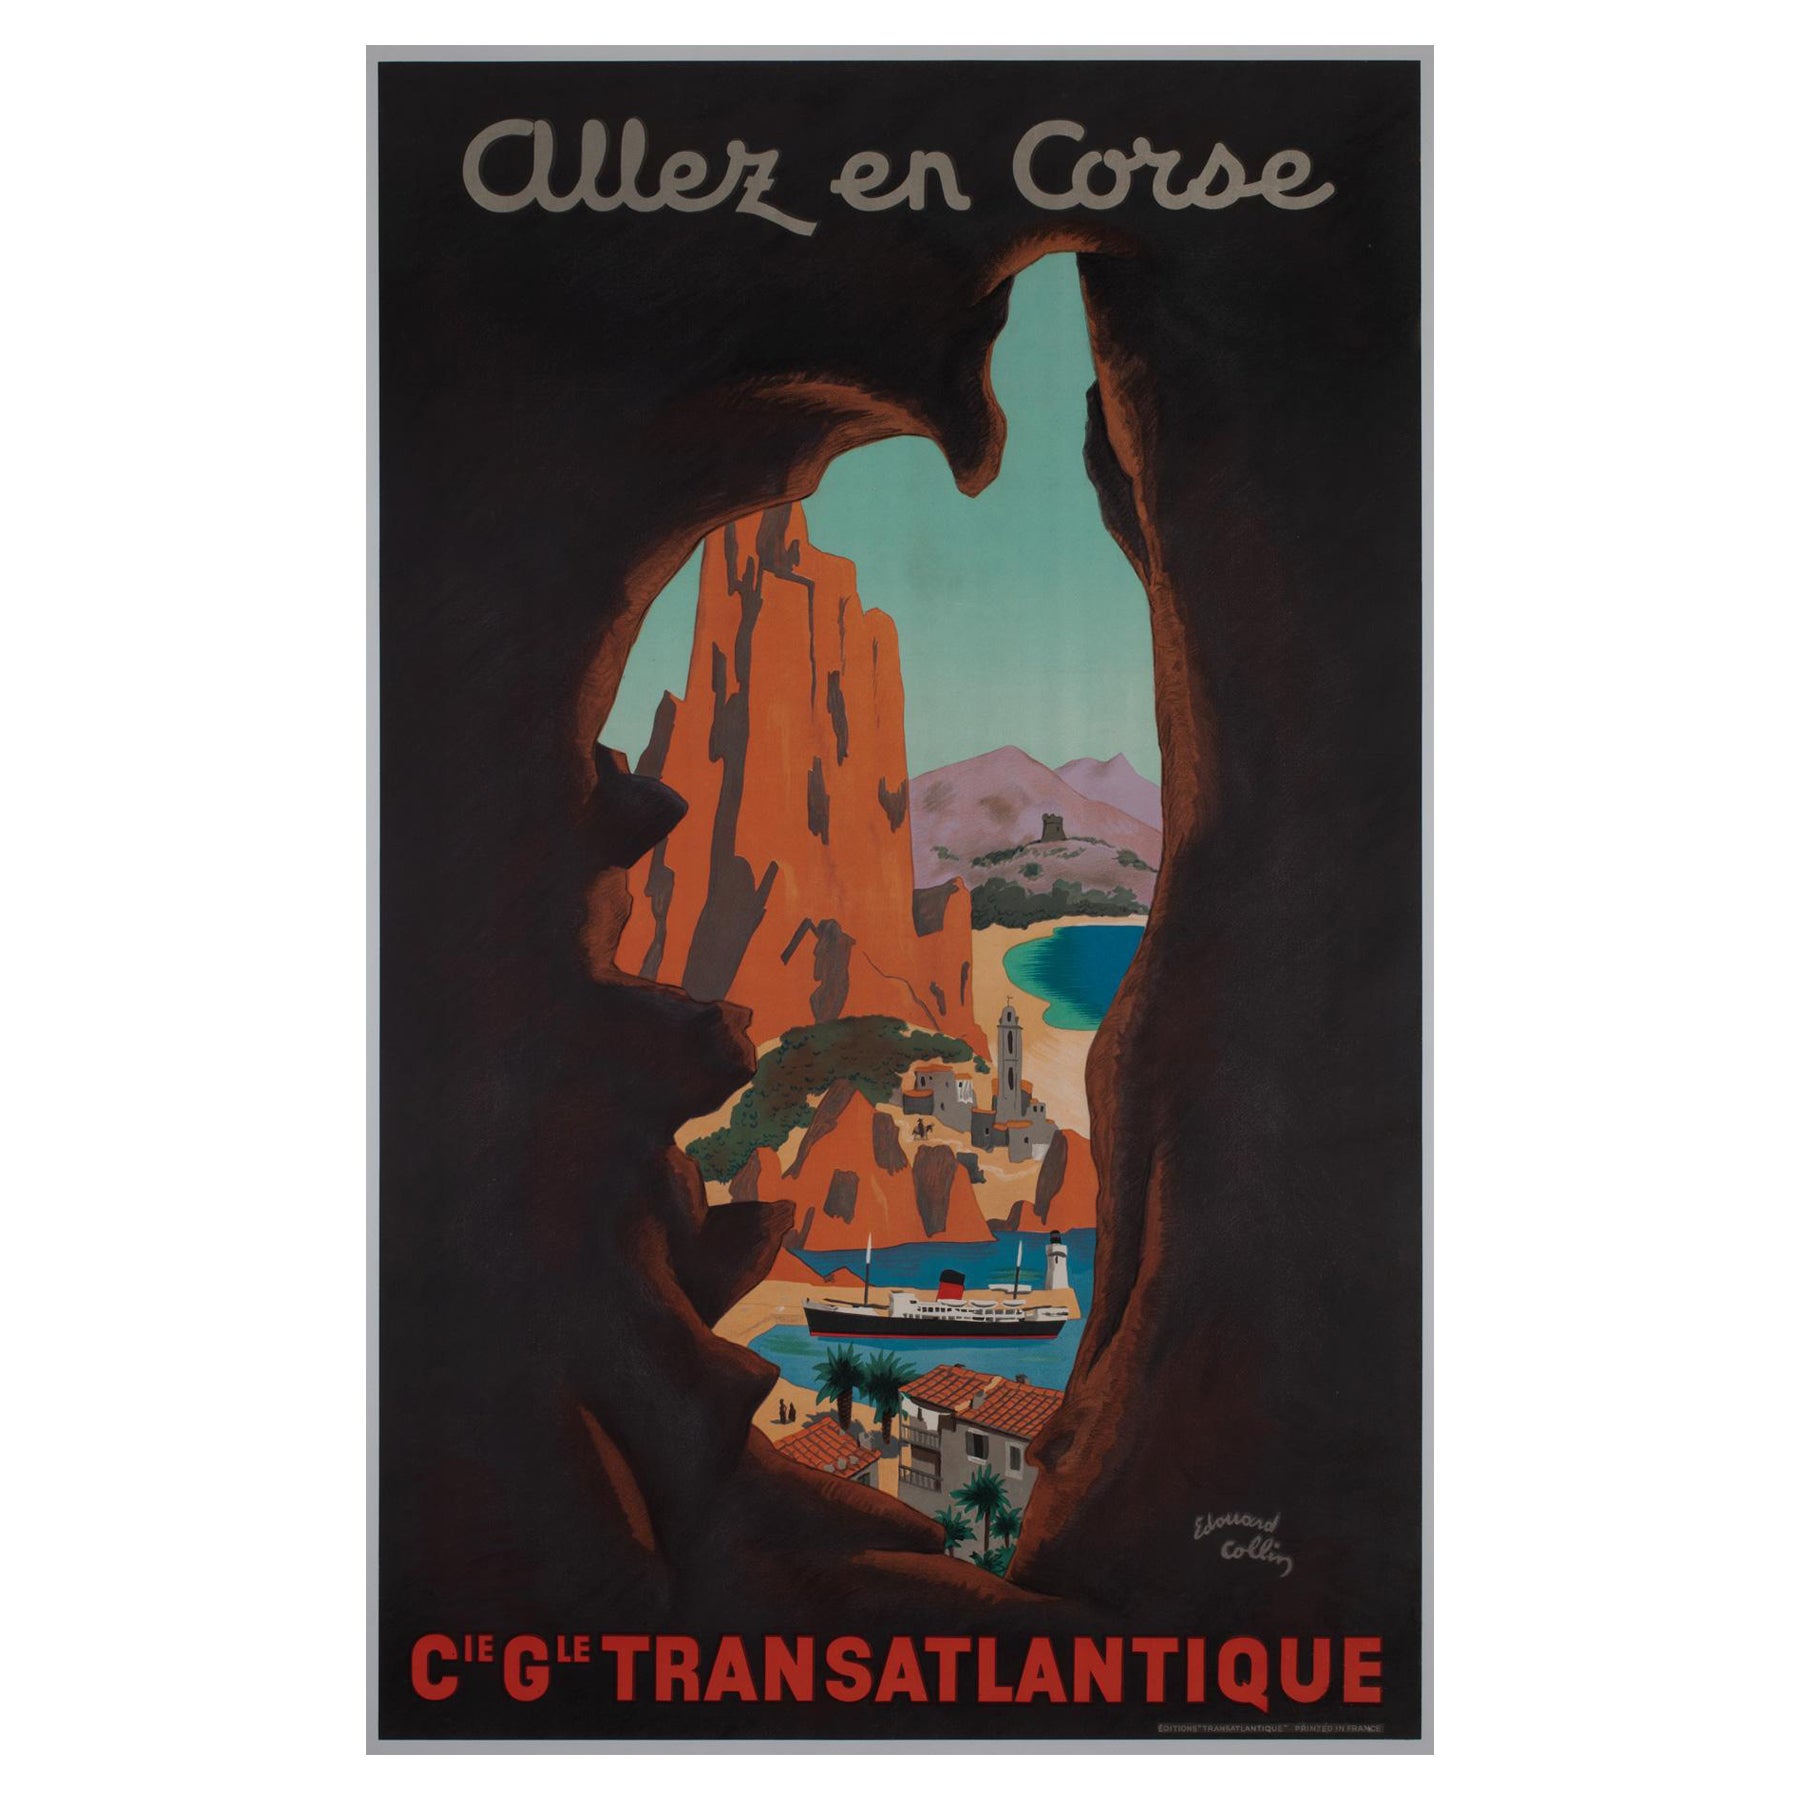 Allez en Corse CGT c1950s Affiche de voyage en Corse, Edouard Collin